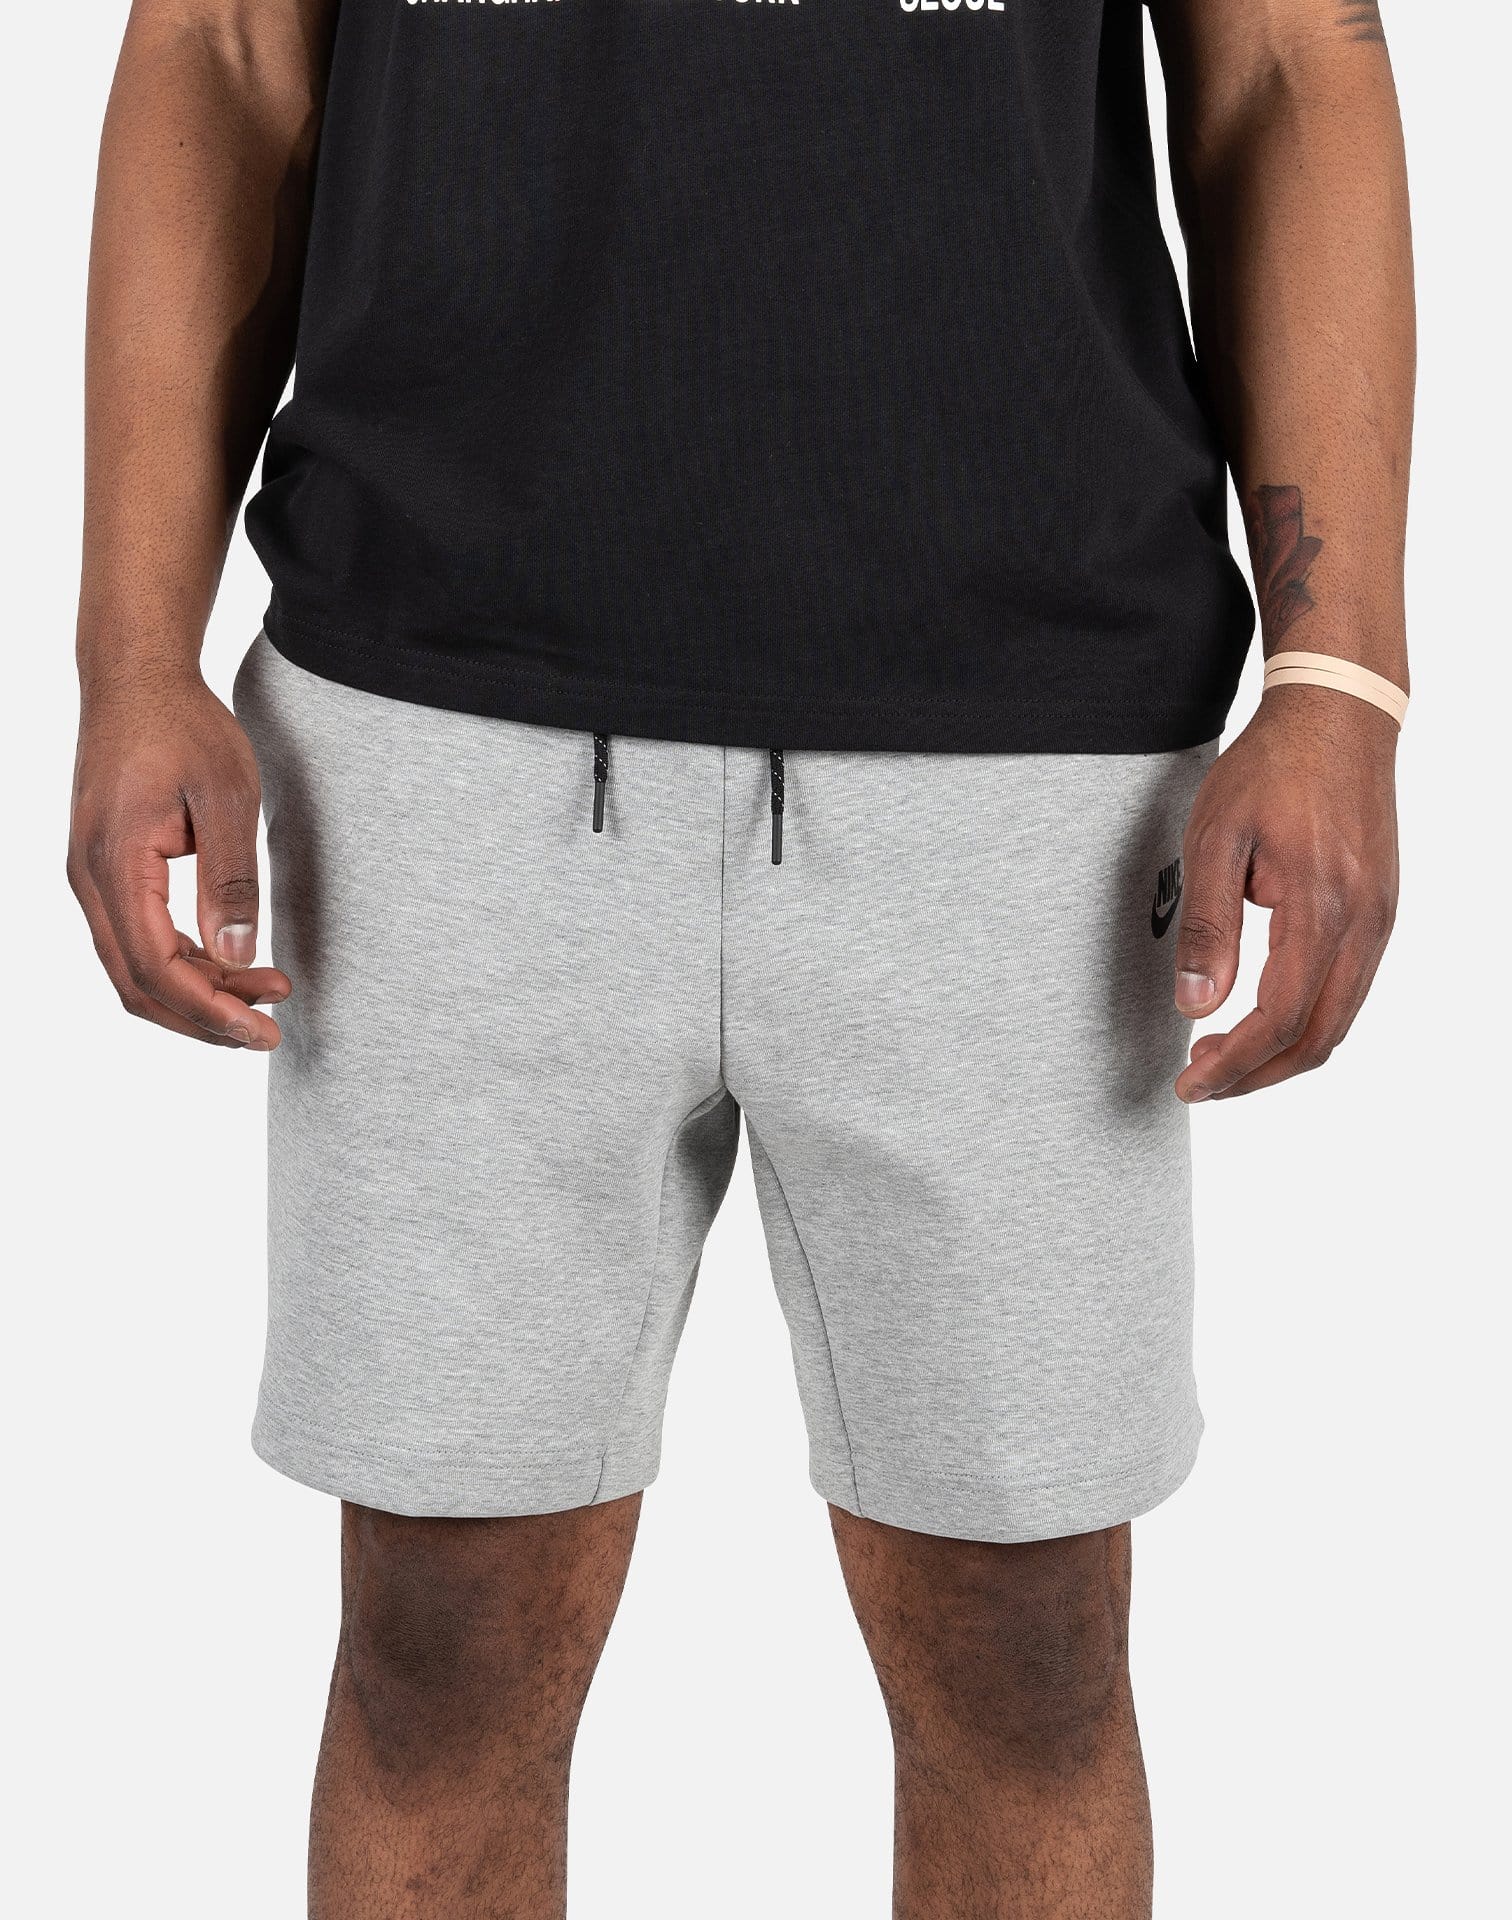 Спортивные шорты мужские Nike Nsw Tch Flc Short CU4503-063 серые M